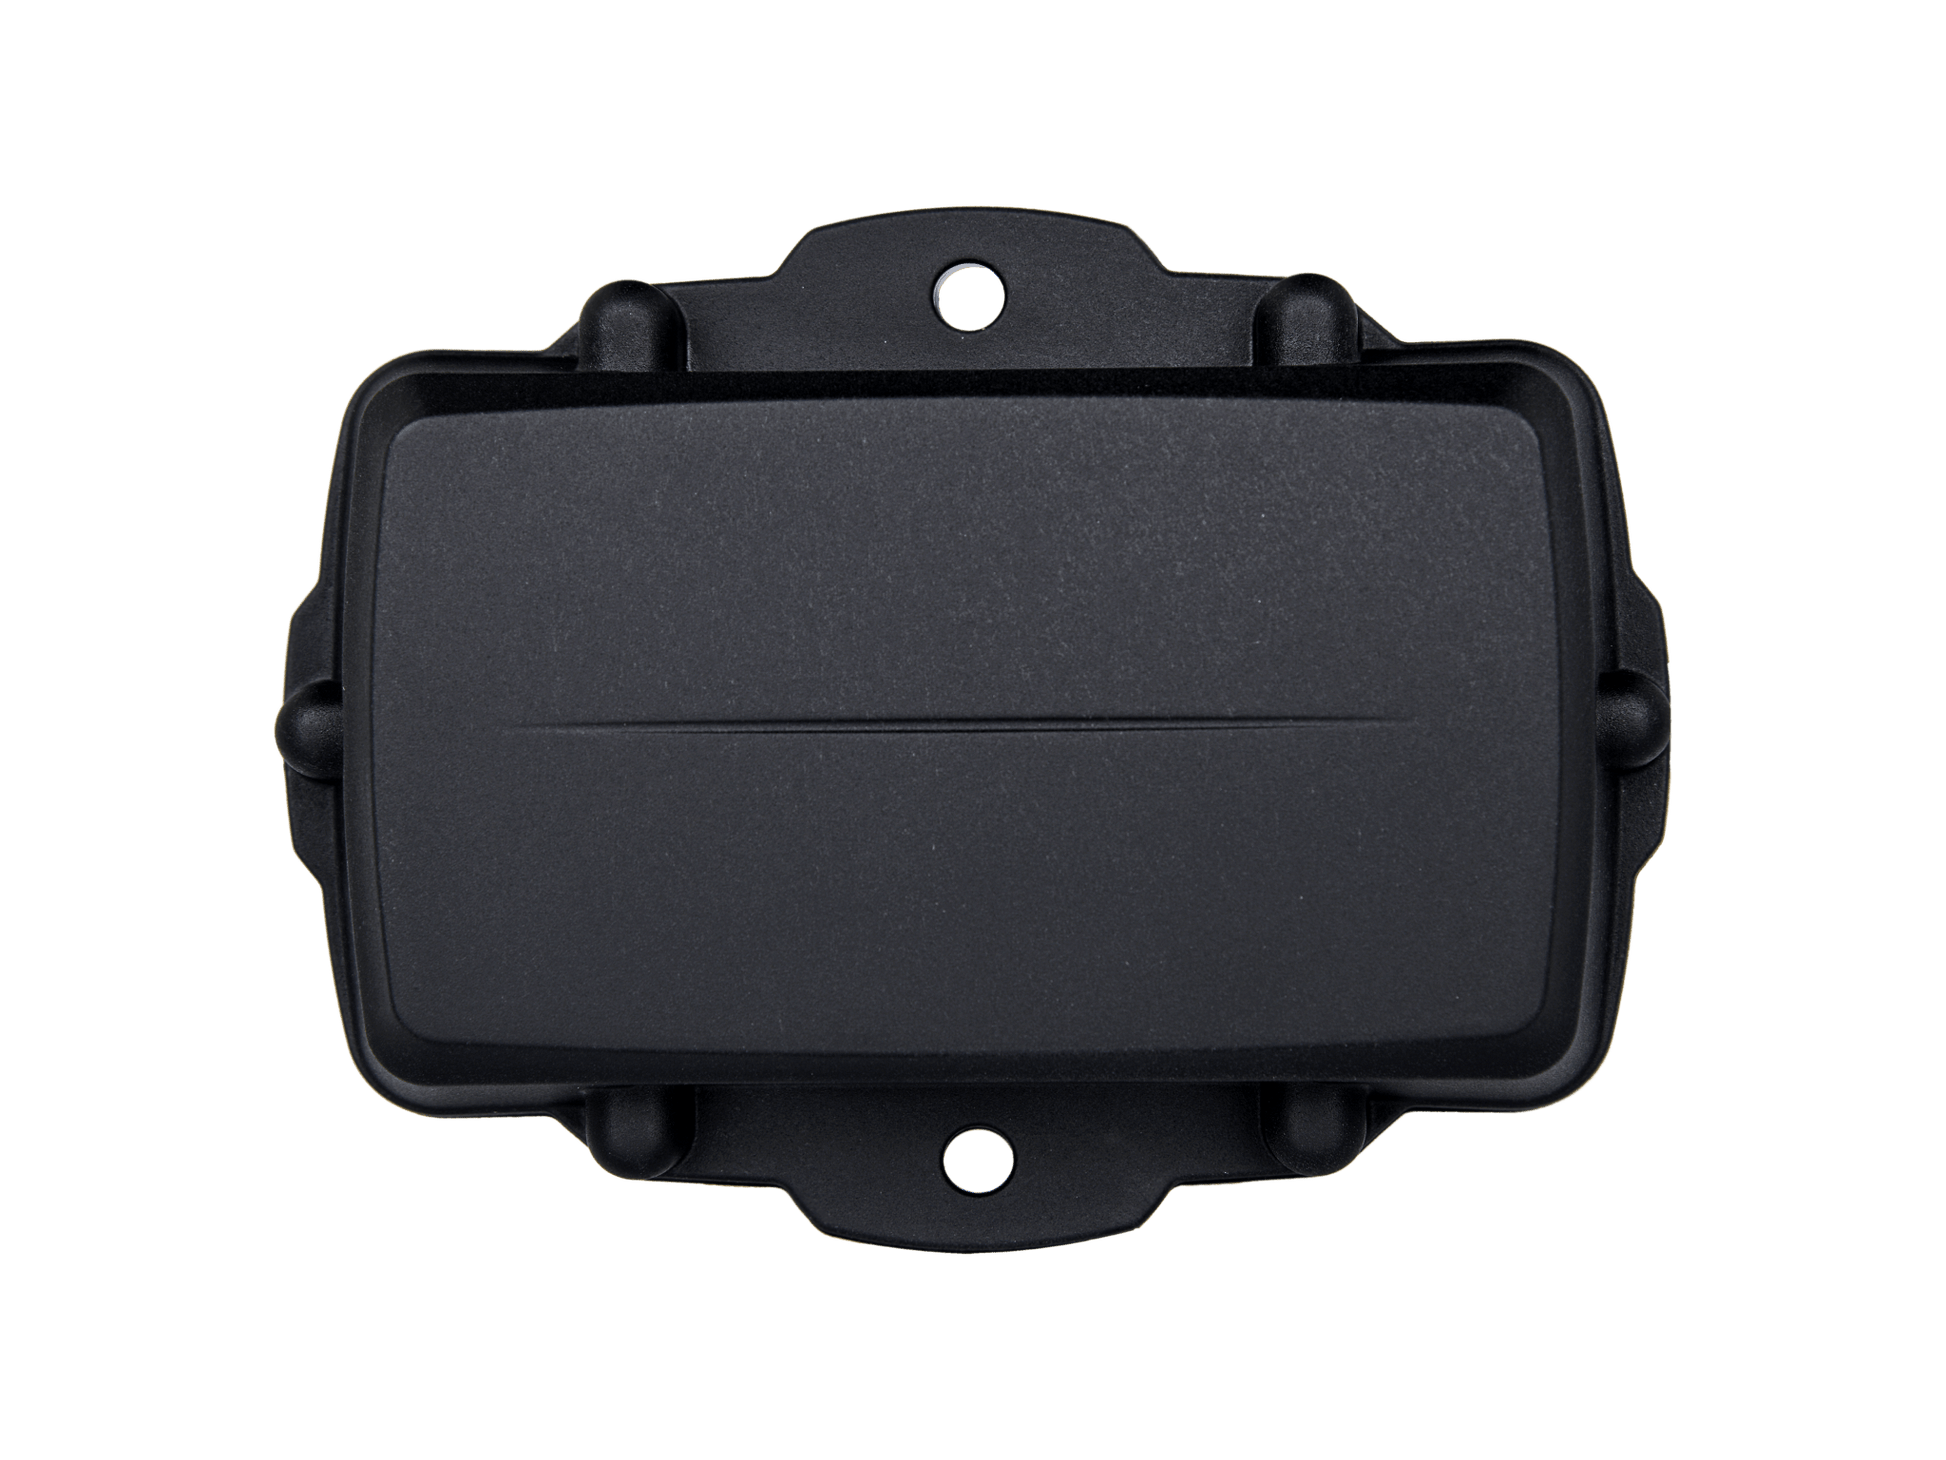 BlackOwl Long Life Battery Powered GPS Tracker - BlackOwl GPS